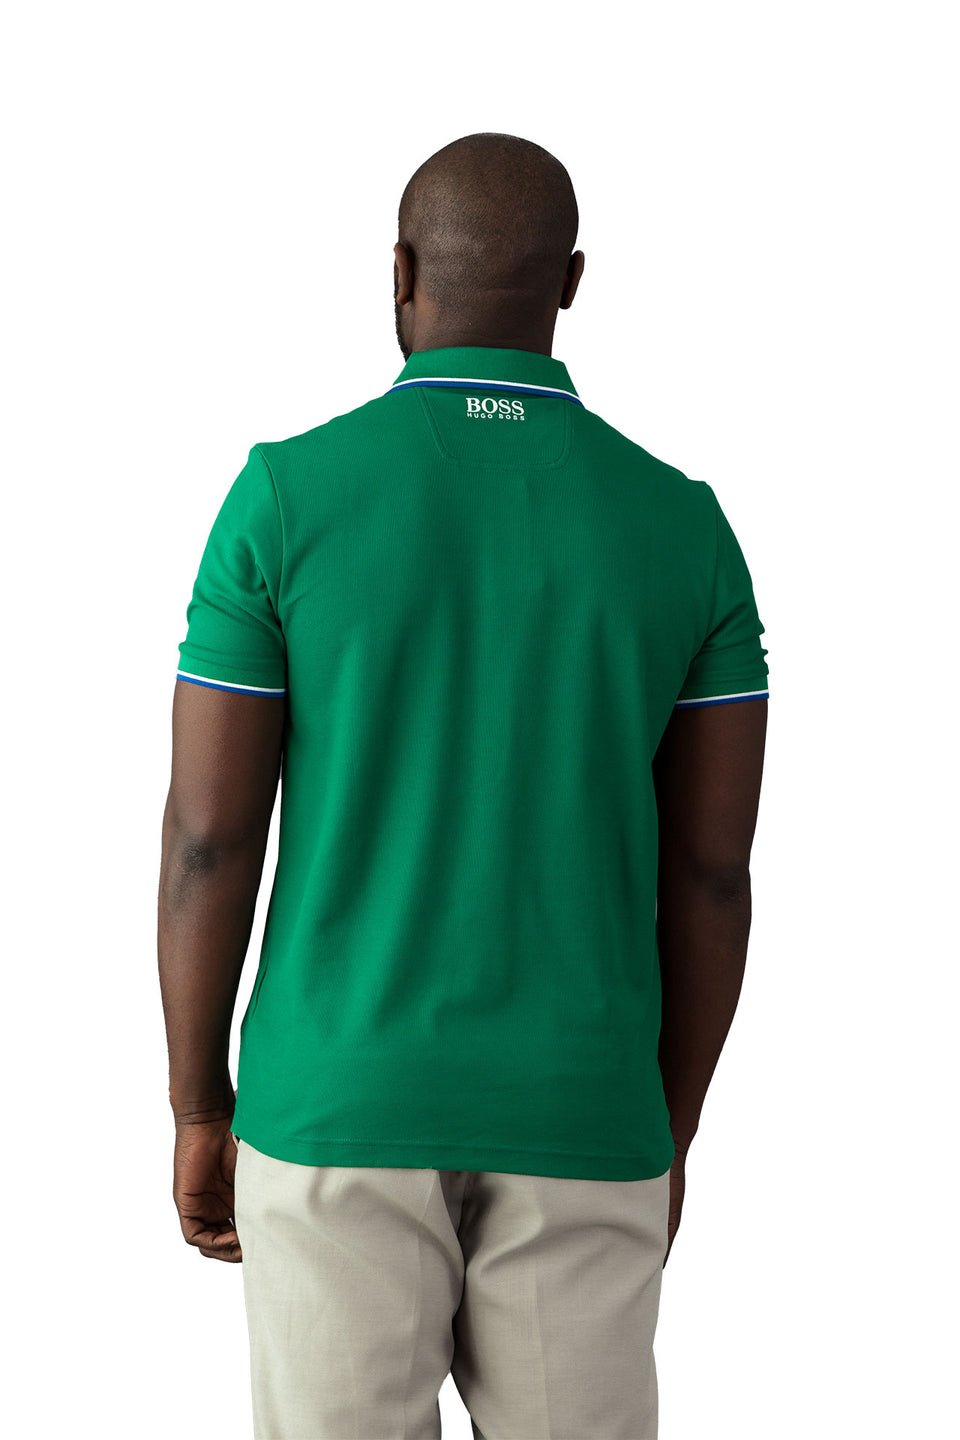 Hugo Boss Green Polo Shirt - Camden Connaught